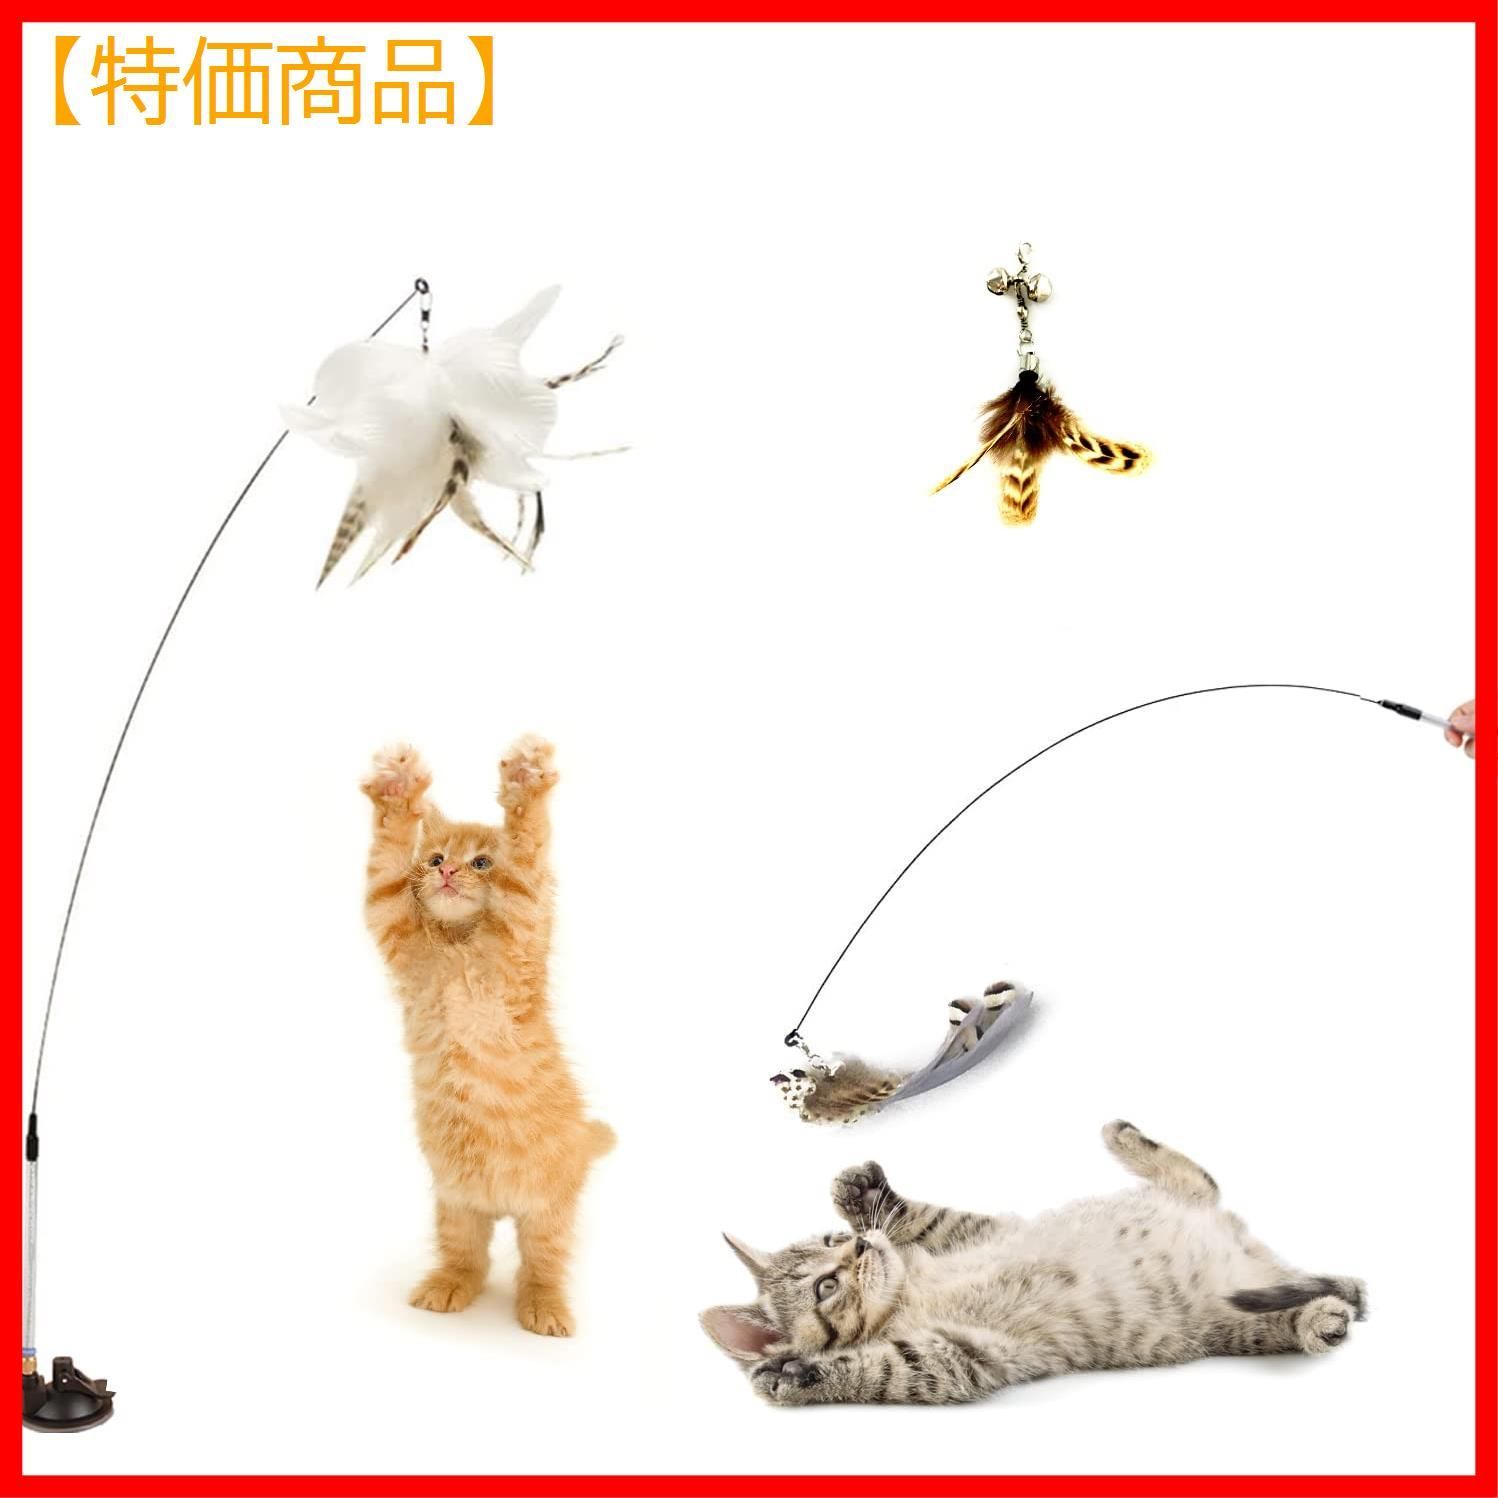 Fenspeed 猫じゃらし 猫 おもちゃ 吸盤式自動釣り竿 プレミアムフェザー 鈴付き猫用玩具 リアルな動物の交換猫用おもちゃ 羽棒鈴付き  しつけ用品